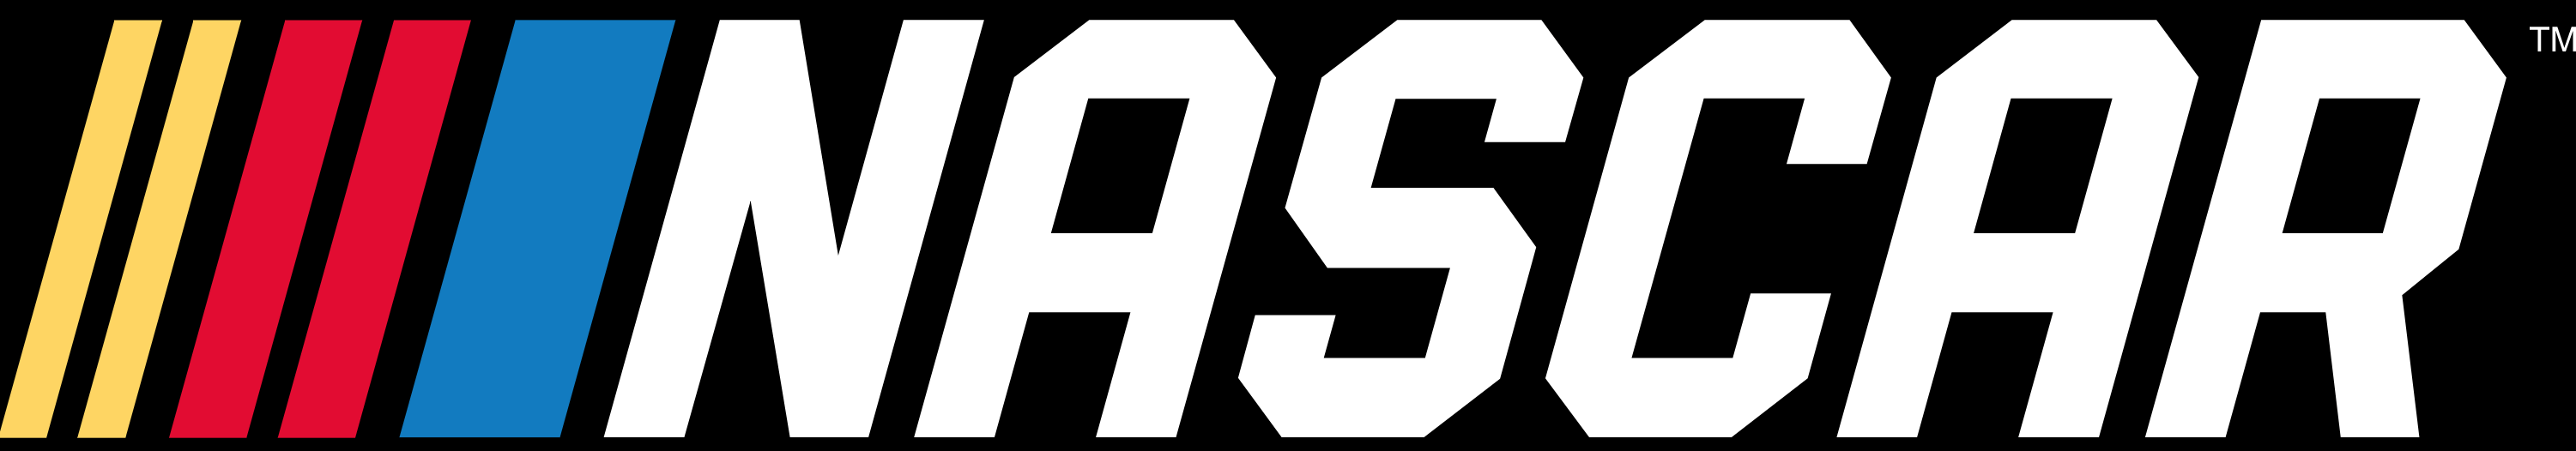 Nascar.com Logo - NASCAR Playoffs 101: What you need to know | NASCAR.com